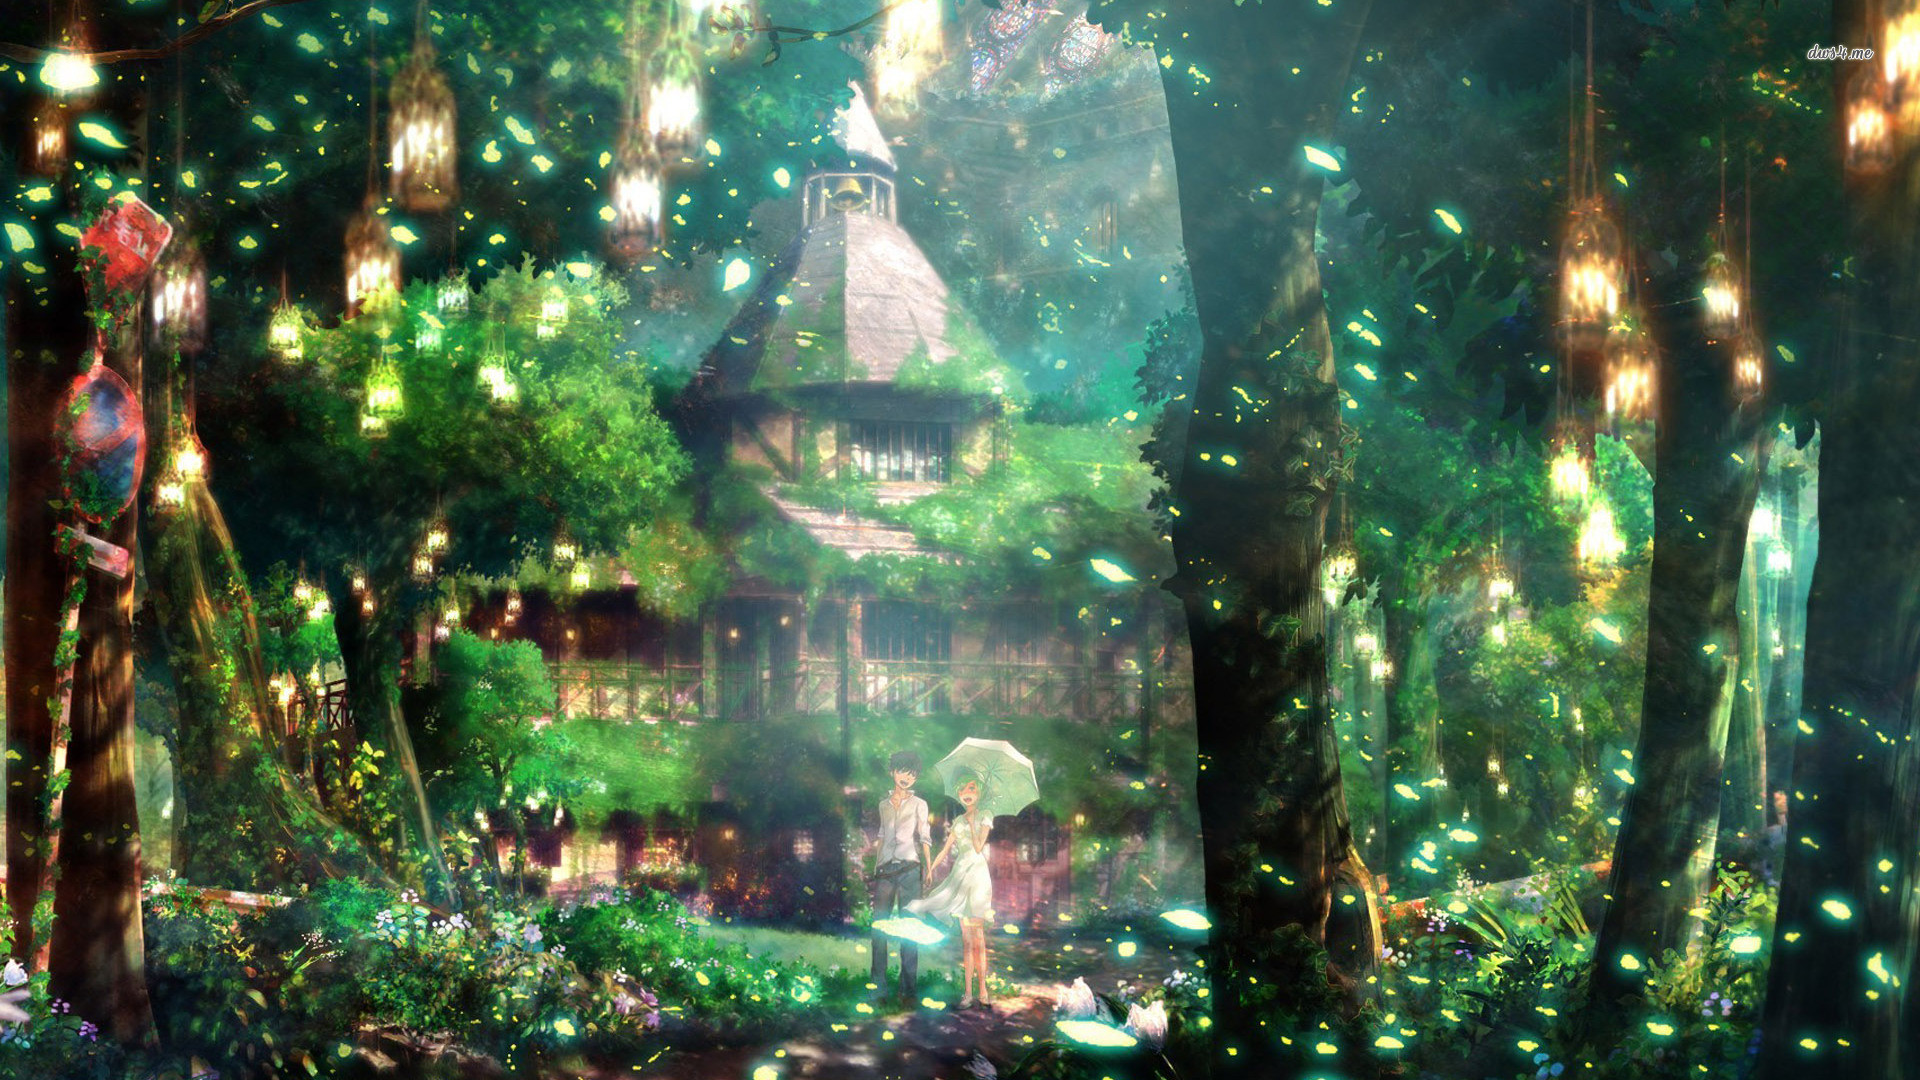 1920x1080 Magical forest Anime HD desktop wallpaper, Forest wallpaper, Couple  wallpaper - Anime no.